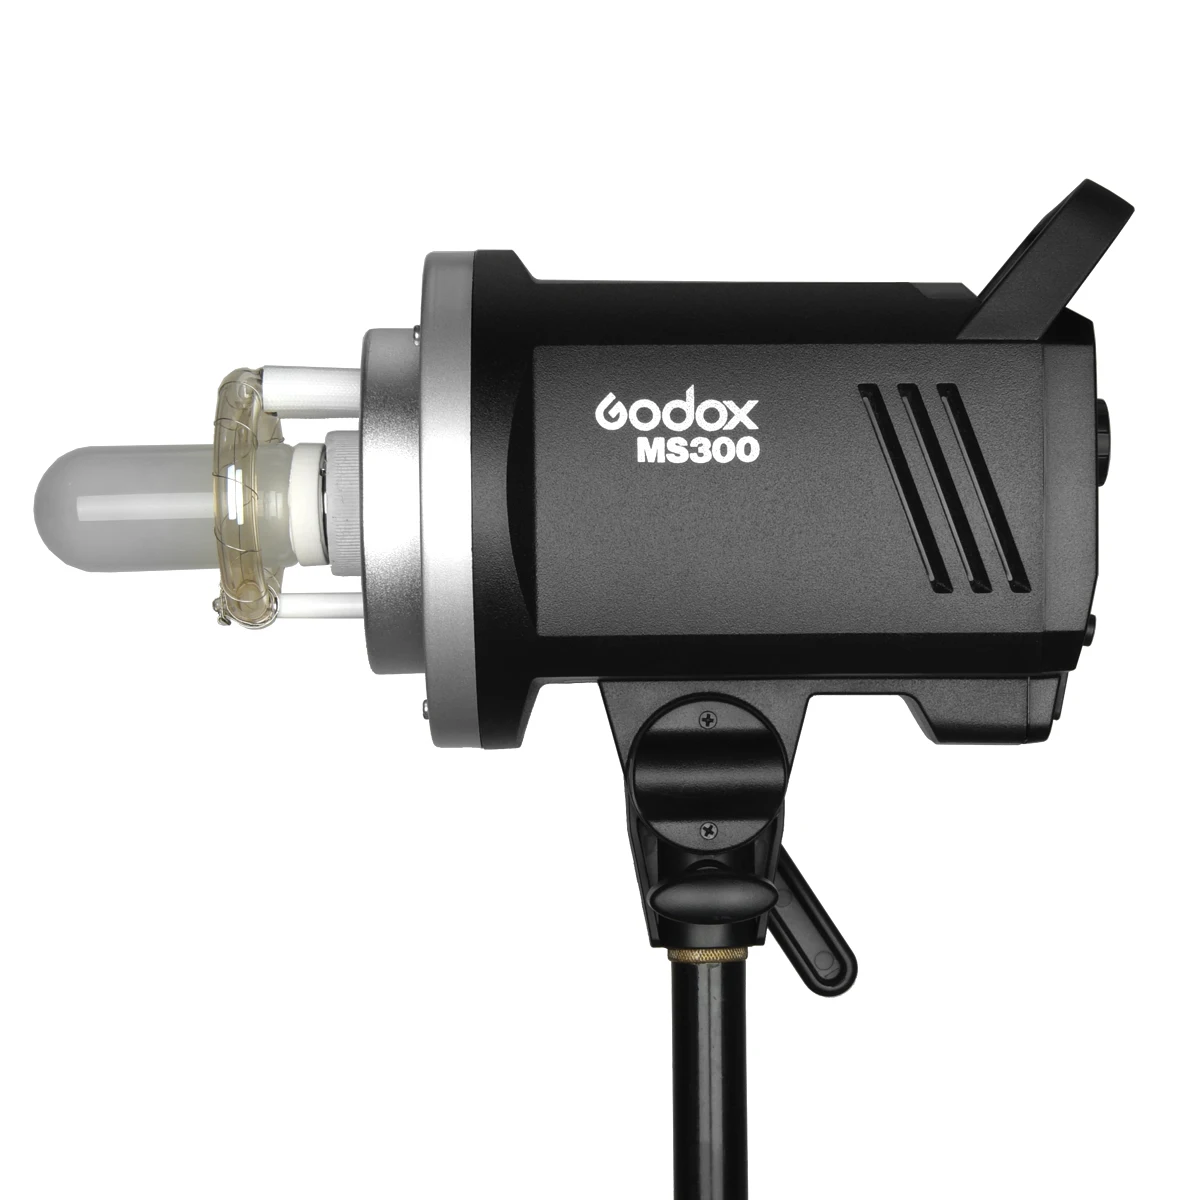 

Godox MS300 студийная вспышка стробоскоп фотовспышка 300Ws 2,4G Беспроводная система X GN58 5600K 150W моделирующая лампа Bowens Mount